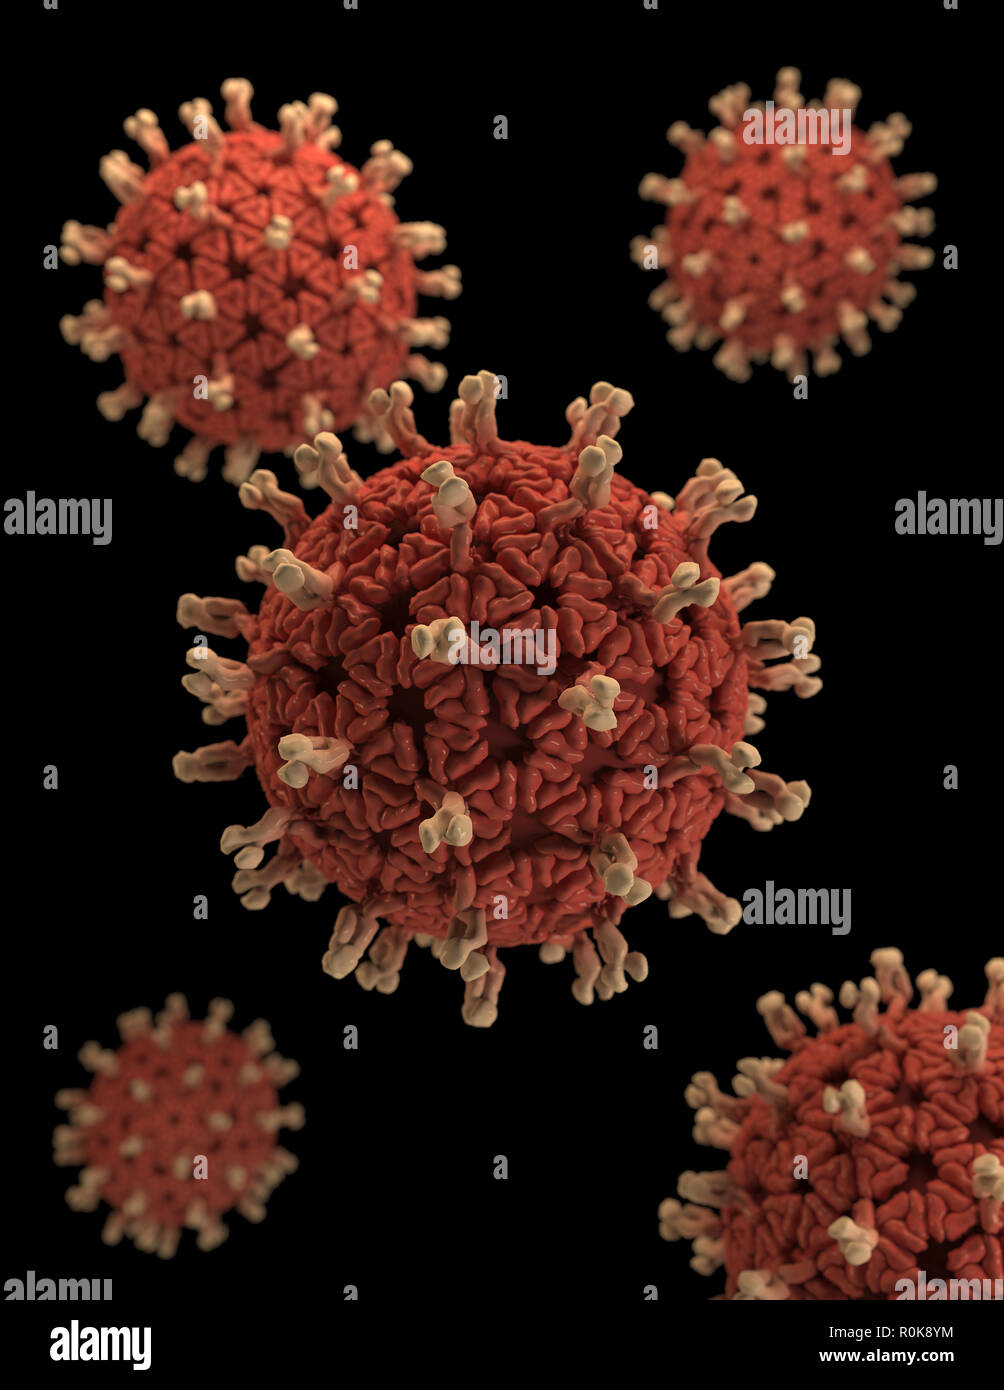 Una rappresentazione tridimensionale di virioni di rotavirus set contro uno sfondo nero. Foto Stock